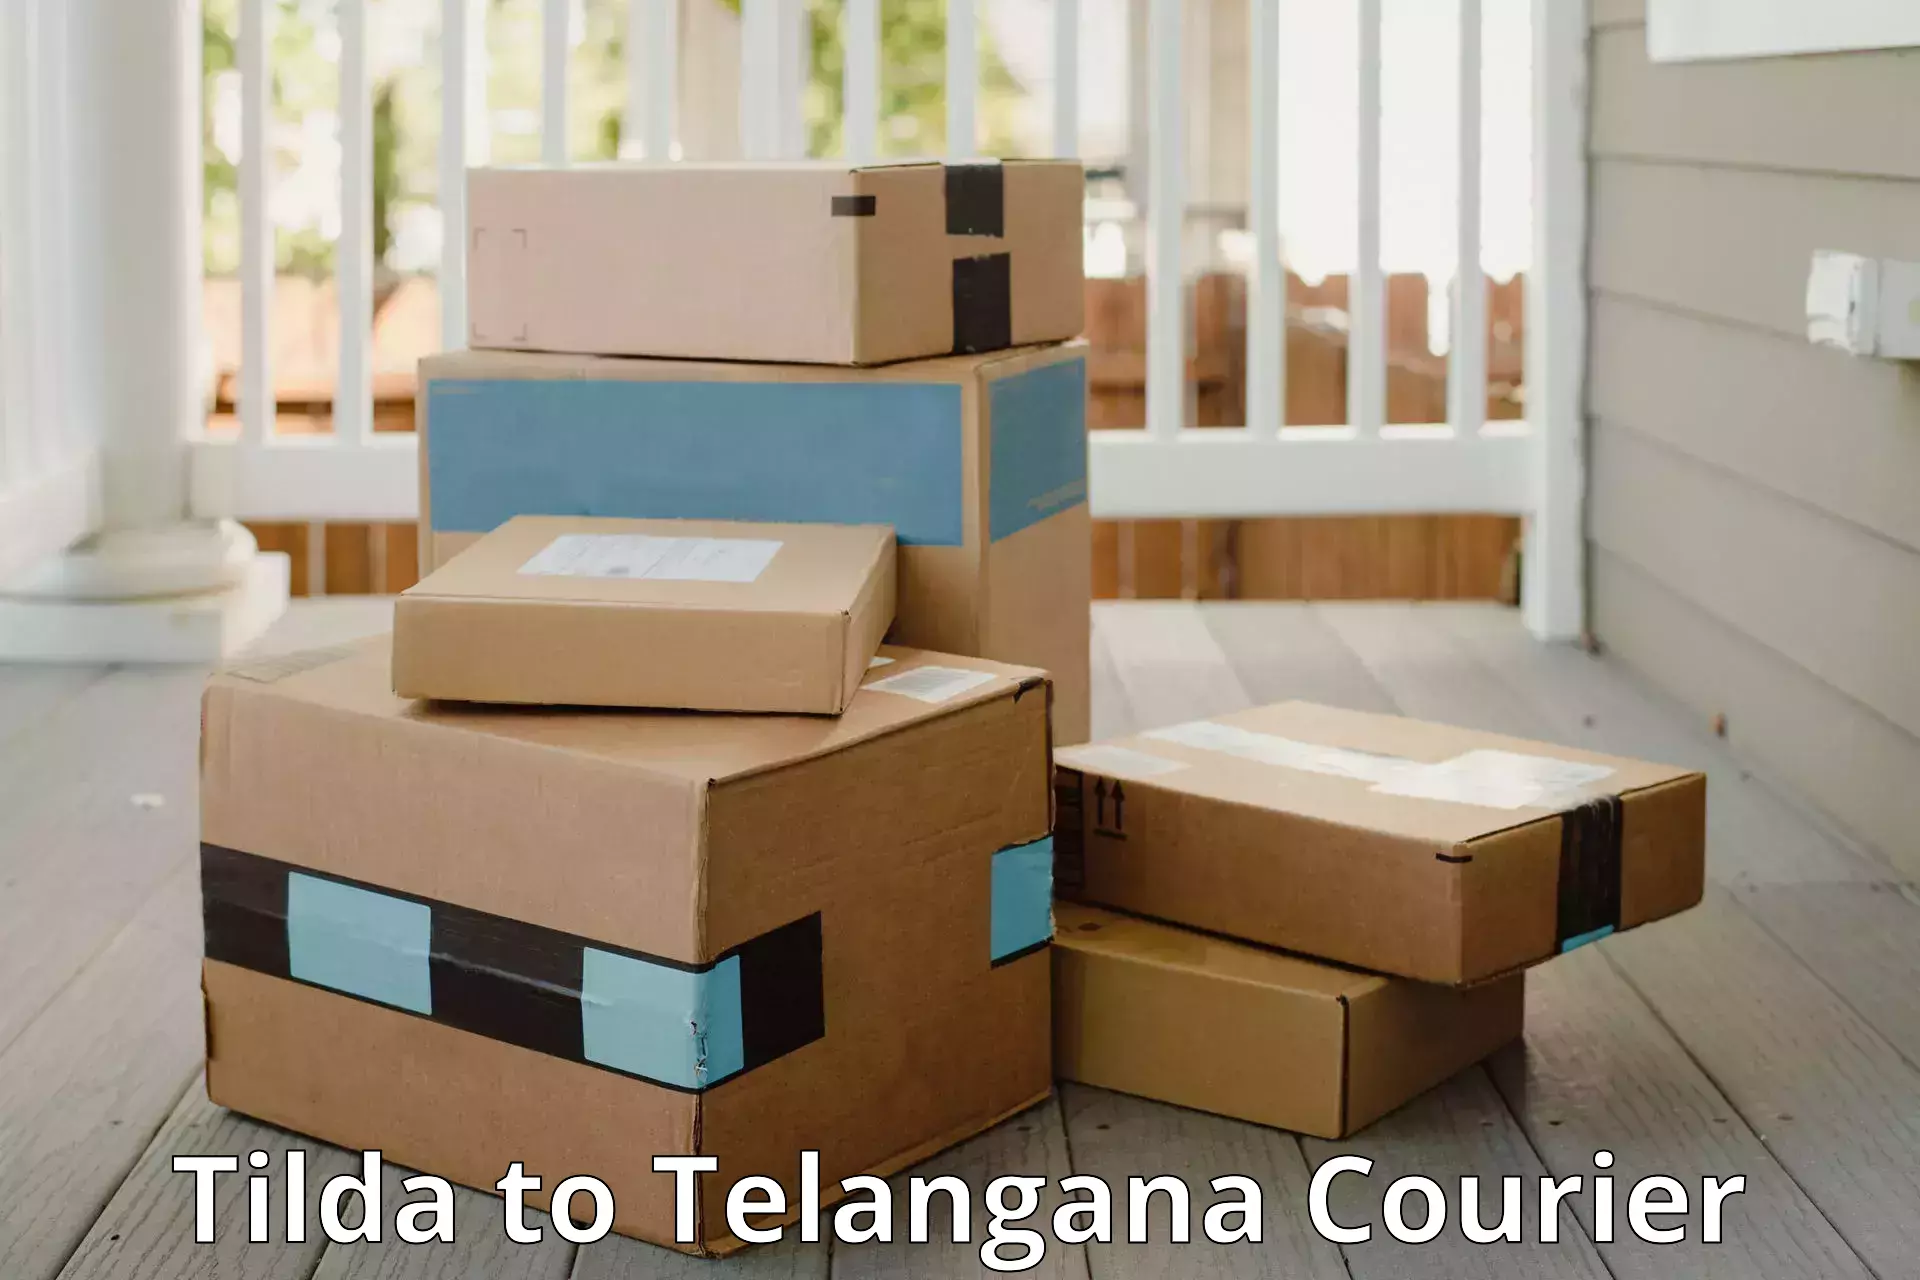 Luggage shipping planner in Tilda to Mudigonda